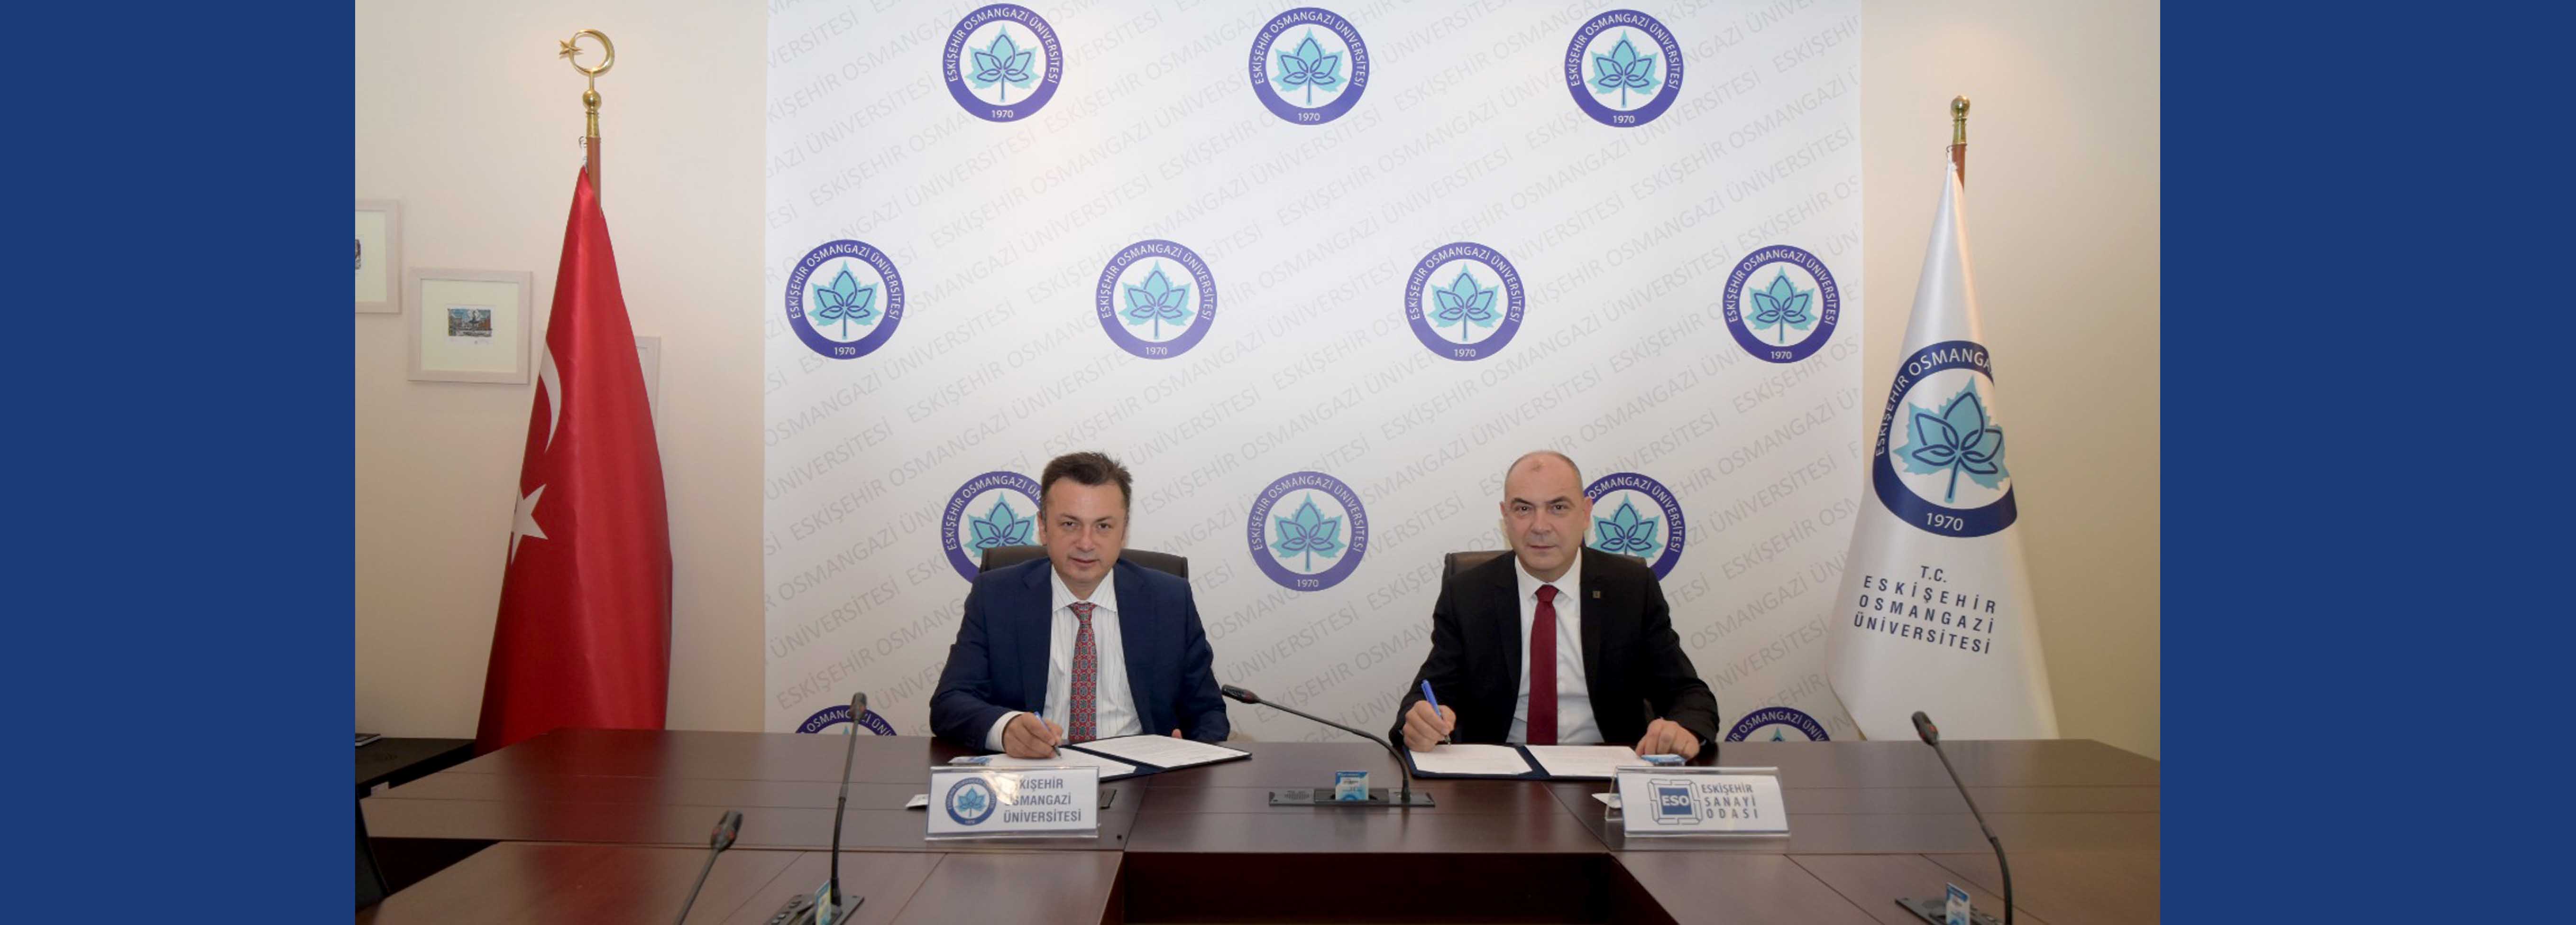 Eskişehir Model Fabrika için işbirliği protokolü imzalandı  